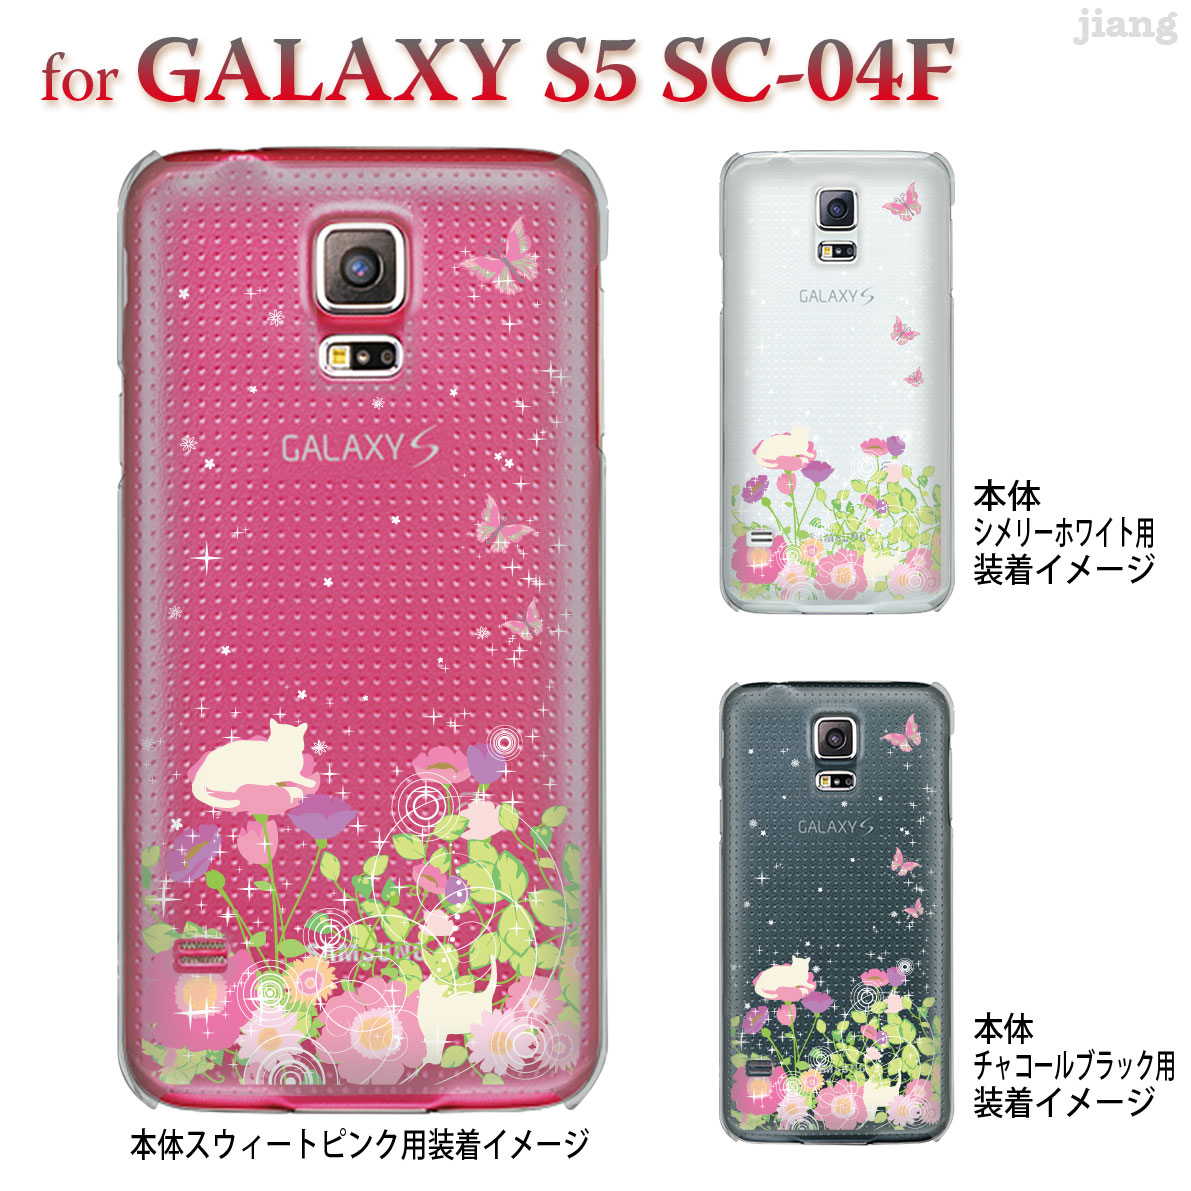 楽天市場 ジアン Jiang Galaxy S5 Sc 04f ケース カバー スマホケース クリアケース Clear Arts かわいい おしゃれ きれい お花畑とネコ 22 Sc04f Ca0104 Jiangプラス